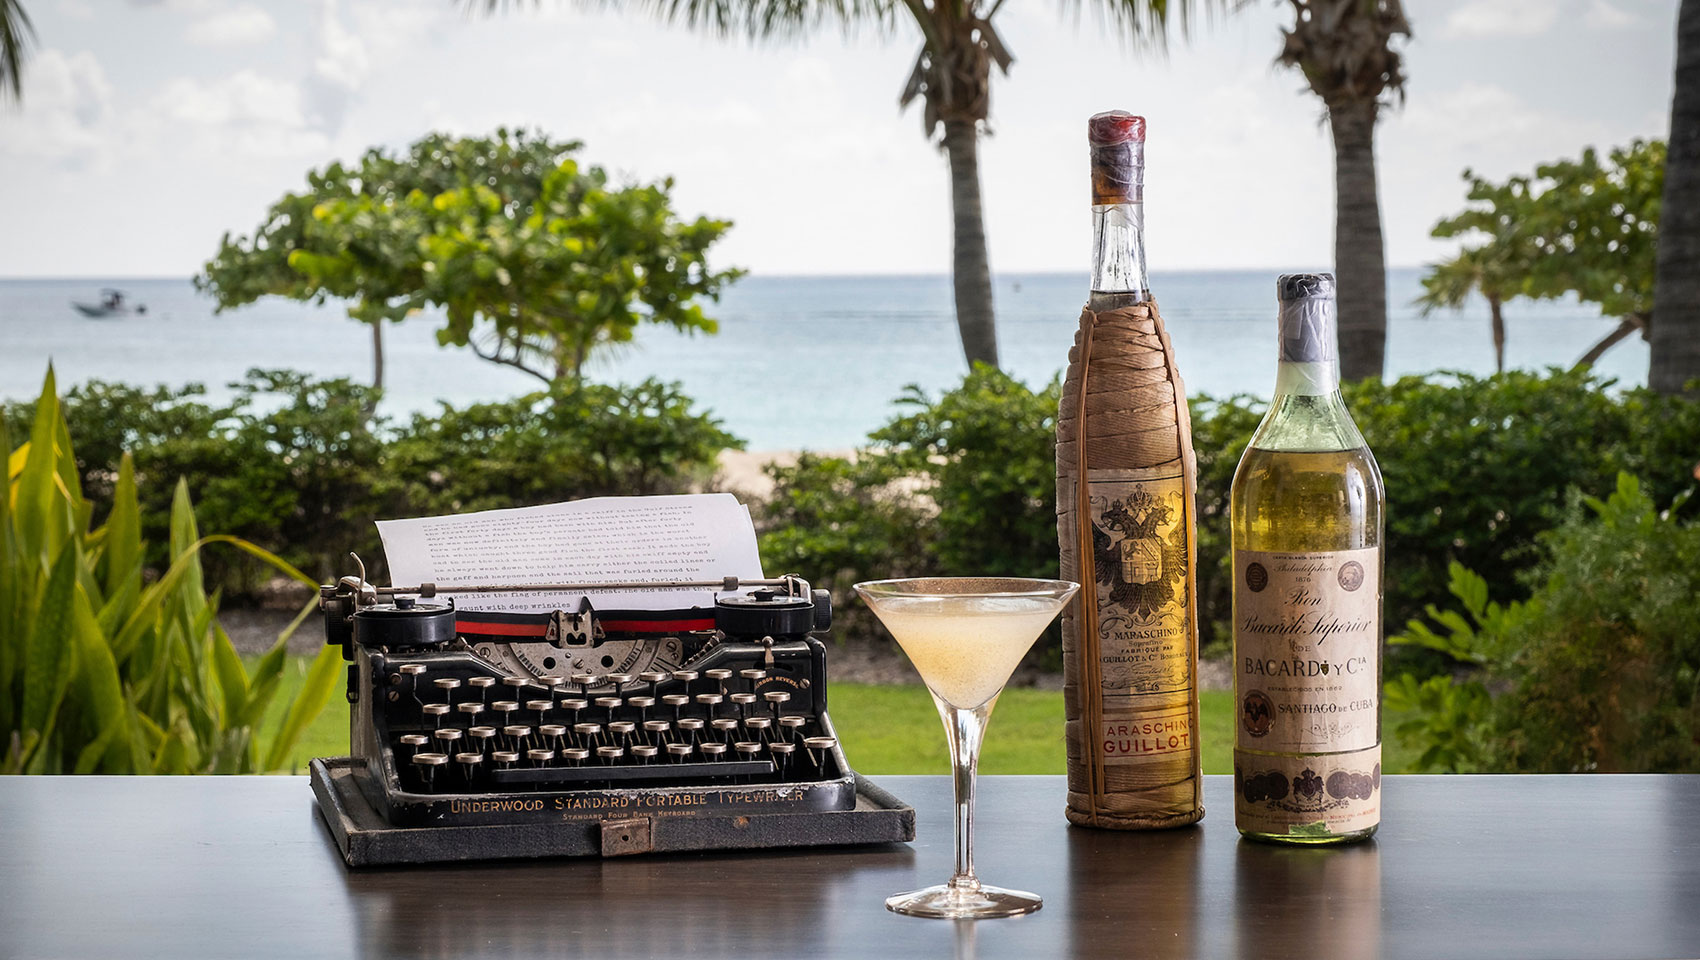 Hemingway Daiquiri with typewriter and sea view